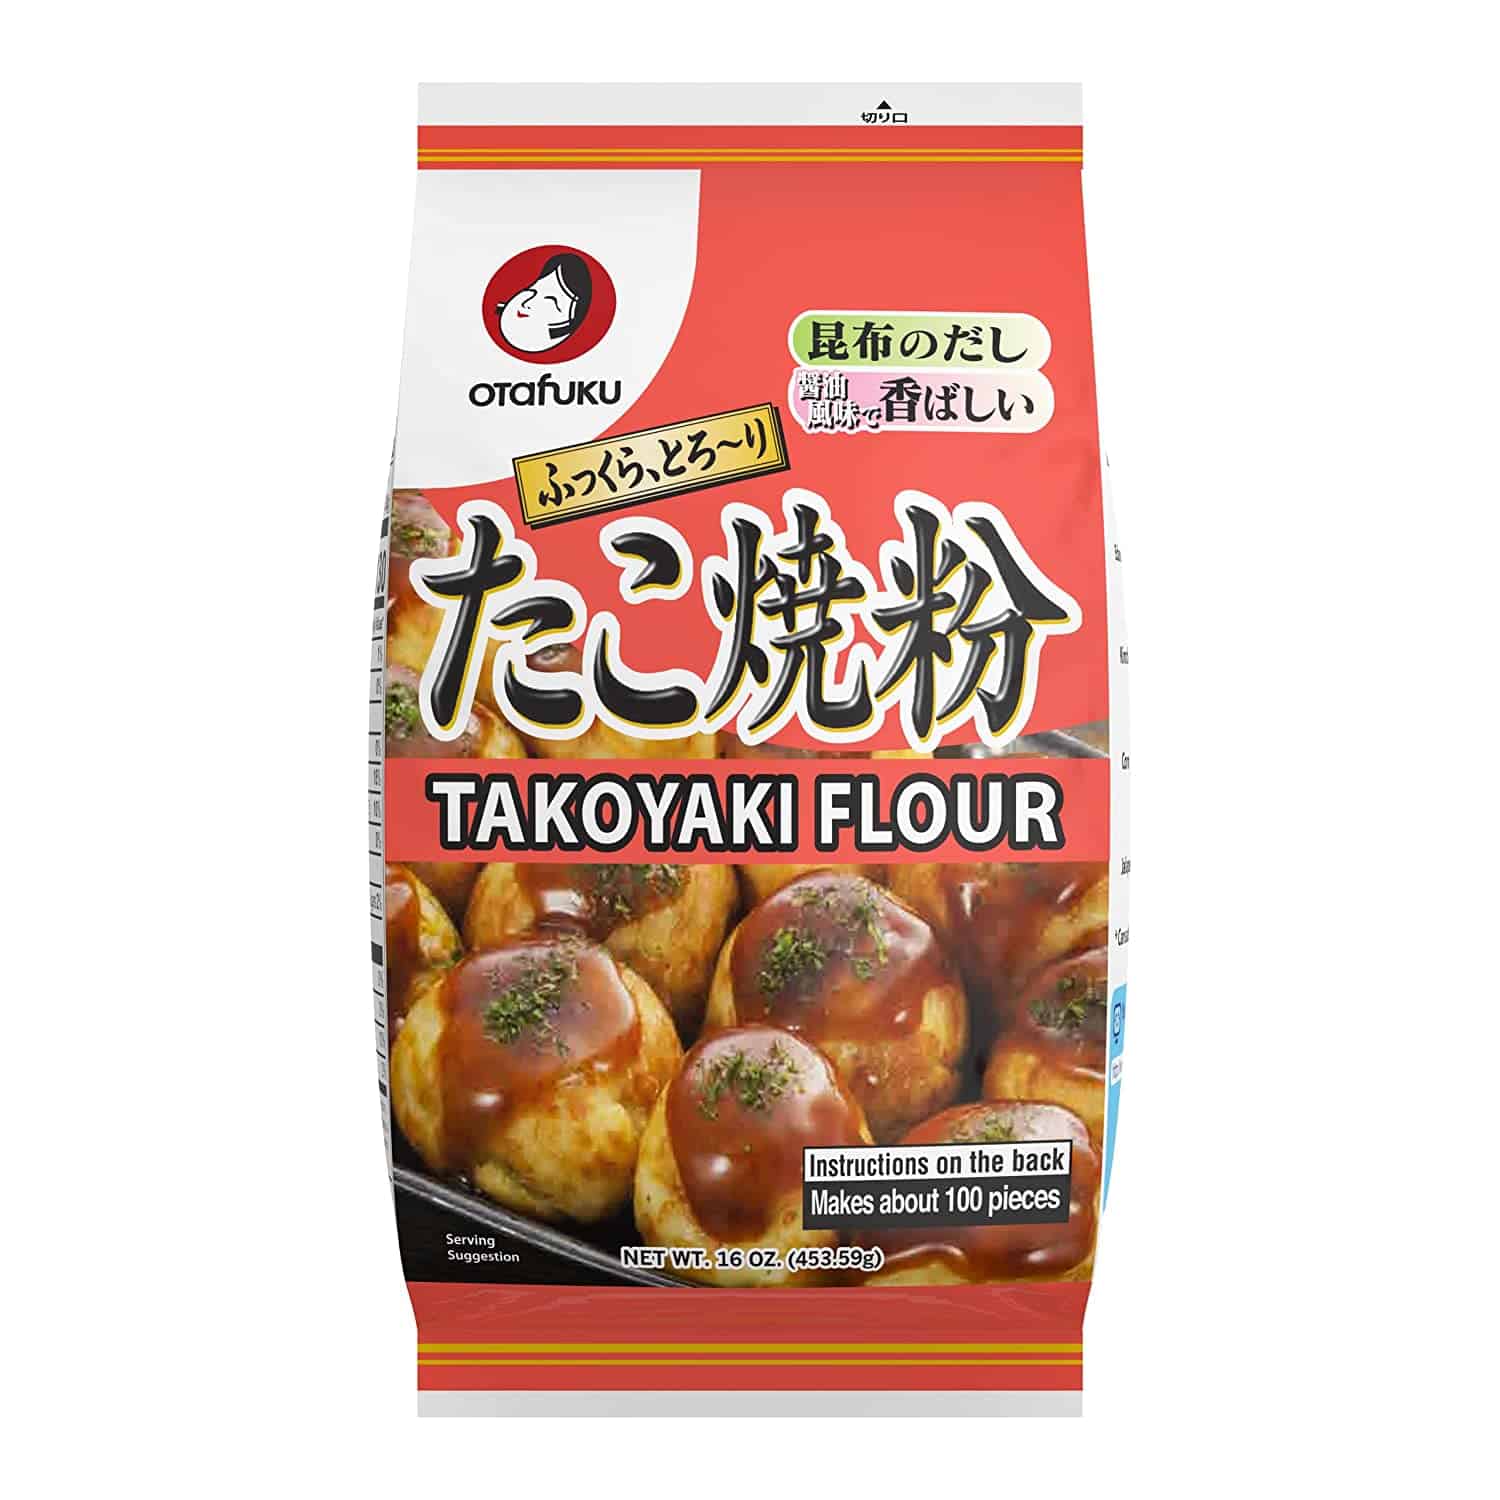 แป้งทาโกะยากิที่ดีที่สุดโดยรวม - Otafuku Takoyaki แป้งสำหรับทาโกะยากิญี่ปุ่น